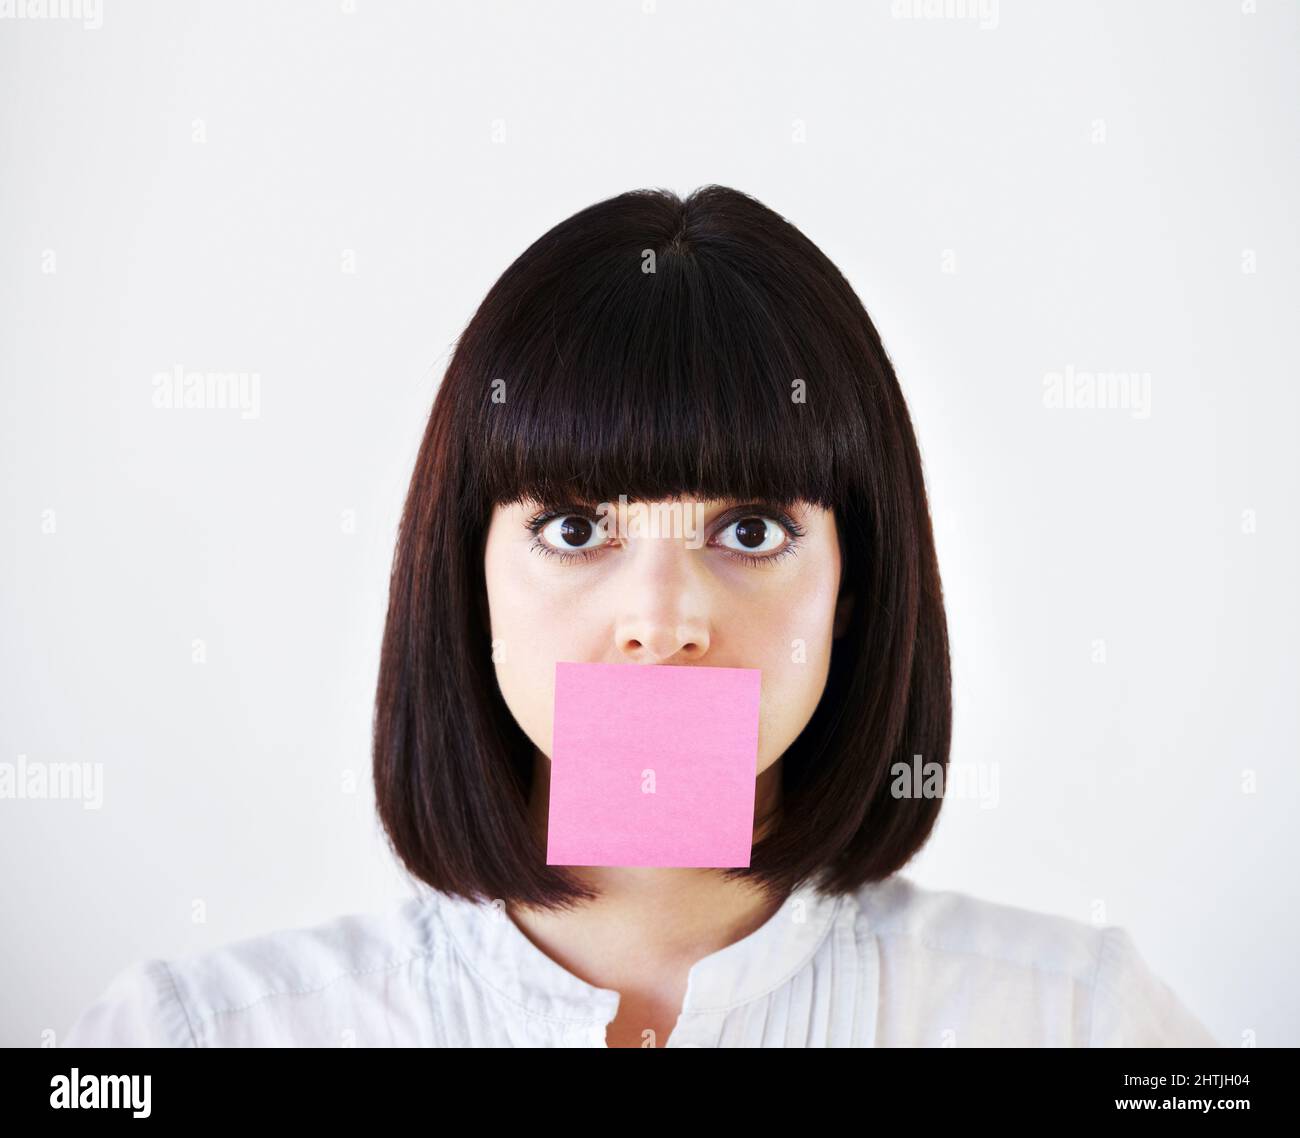 Lo stress soffoca la sua voce creativa. Immagine concettuale di una giovane donna d'affari con una nota rosa post-it che copre la sua bocca. Foto Stock